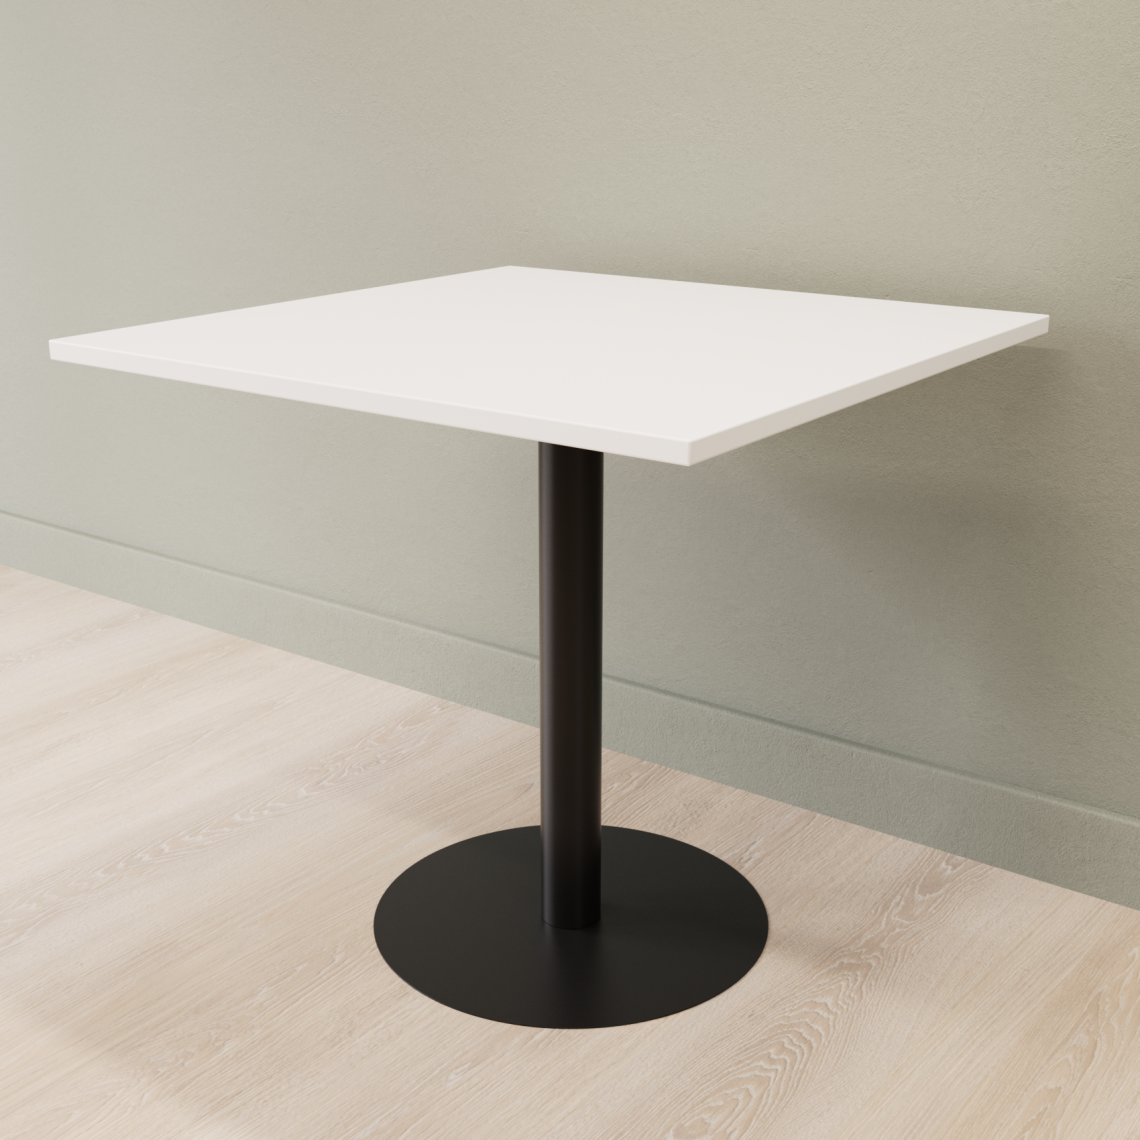 Cafebord med firkantet bordplade og rund fod, Størrelse 60 x 60 cm, Bordplade Hvid, Stativ Sort